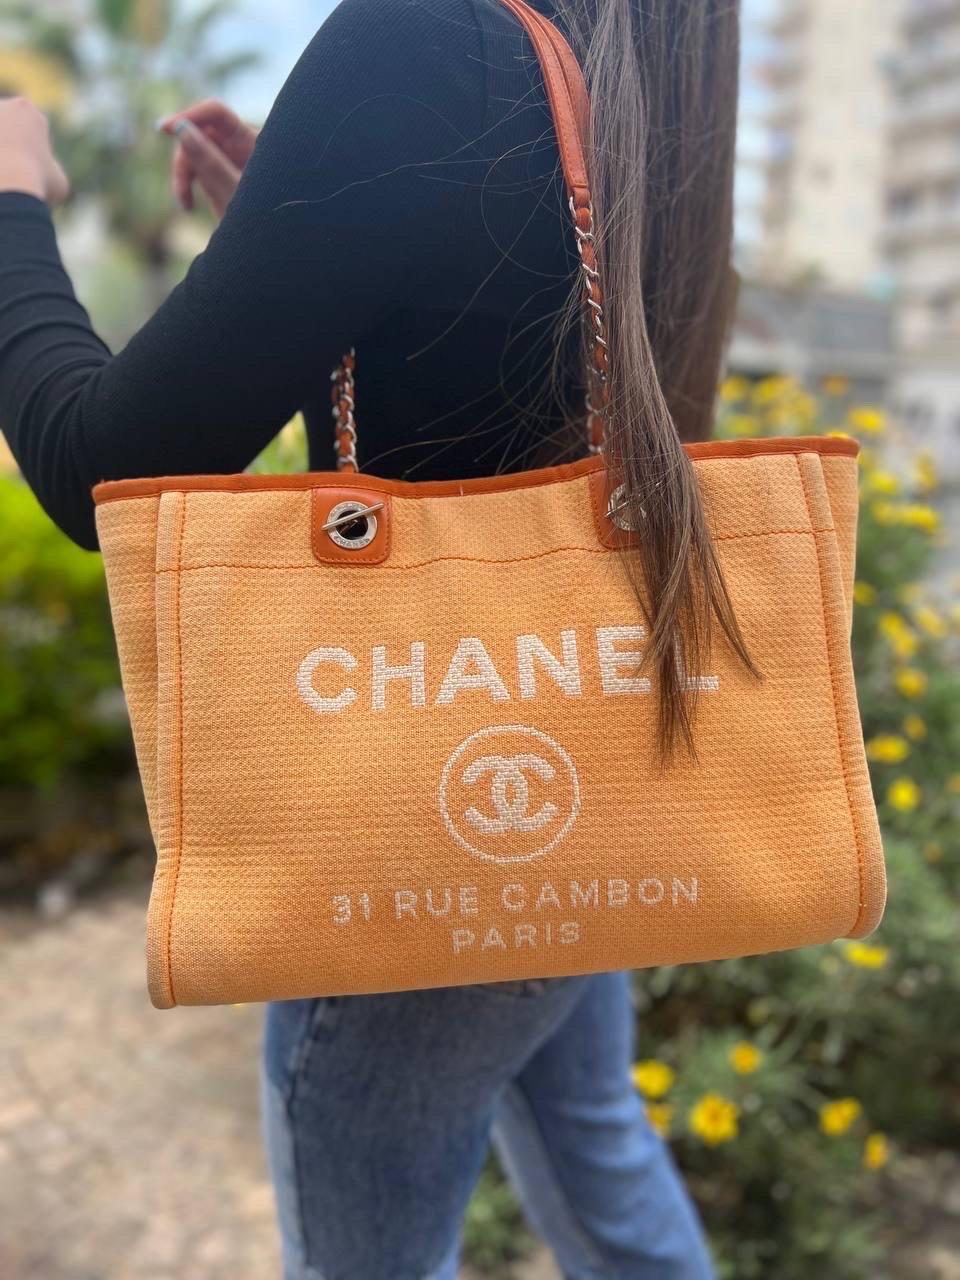 Borsa firmata Chanel, modello Deauville, realizzata in tela color arancio, con inserti in pelle e hardware argentati. Dotata di una chiusura centrale con bottone calamitato, internamente rivestita in tessuto arancio più scuro, molto capiente. Munita